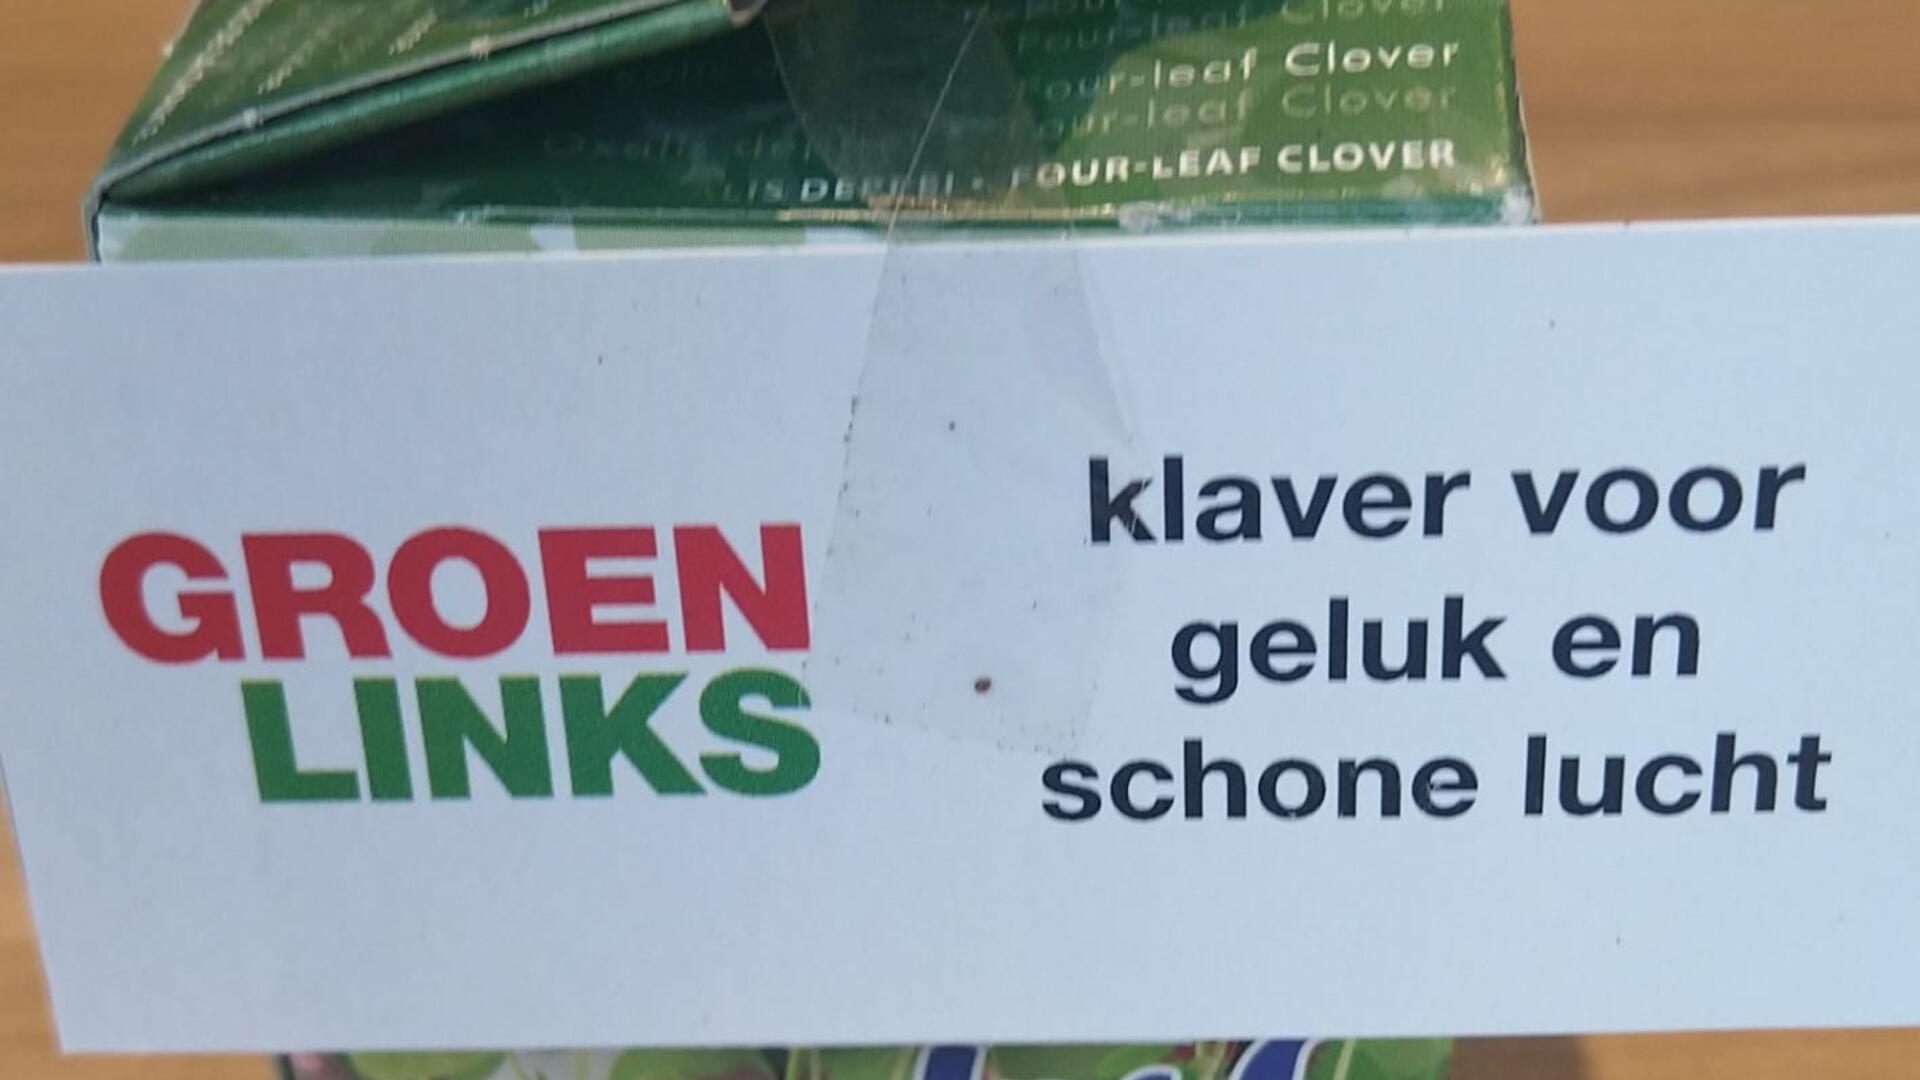 Foto van een doosje met een klavertje vier erin, met hierop een papiertje met het GroenLinks-logo en de tekst "klaver voor geluk en schone lucht"